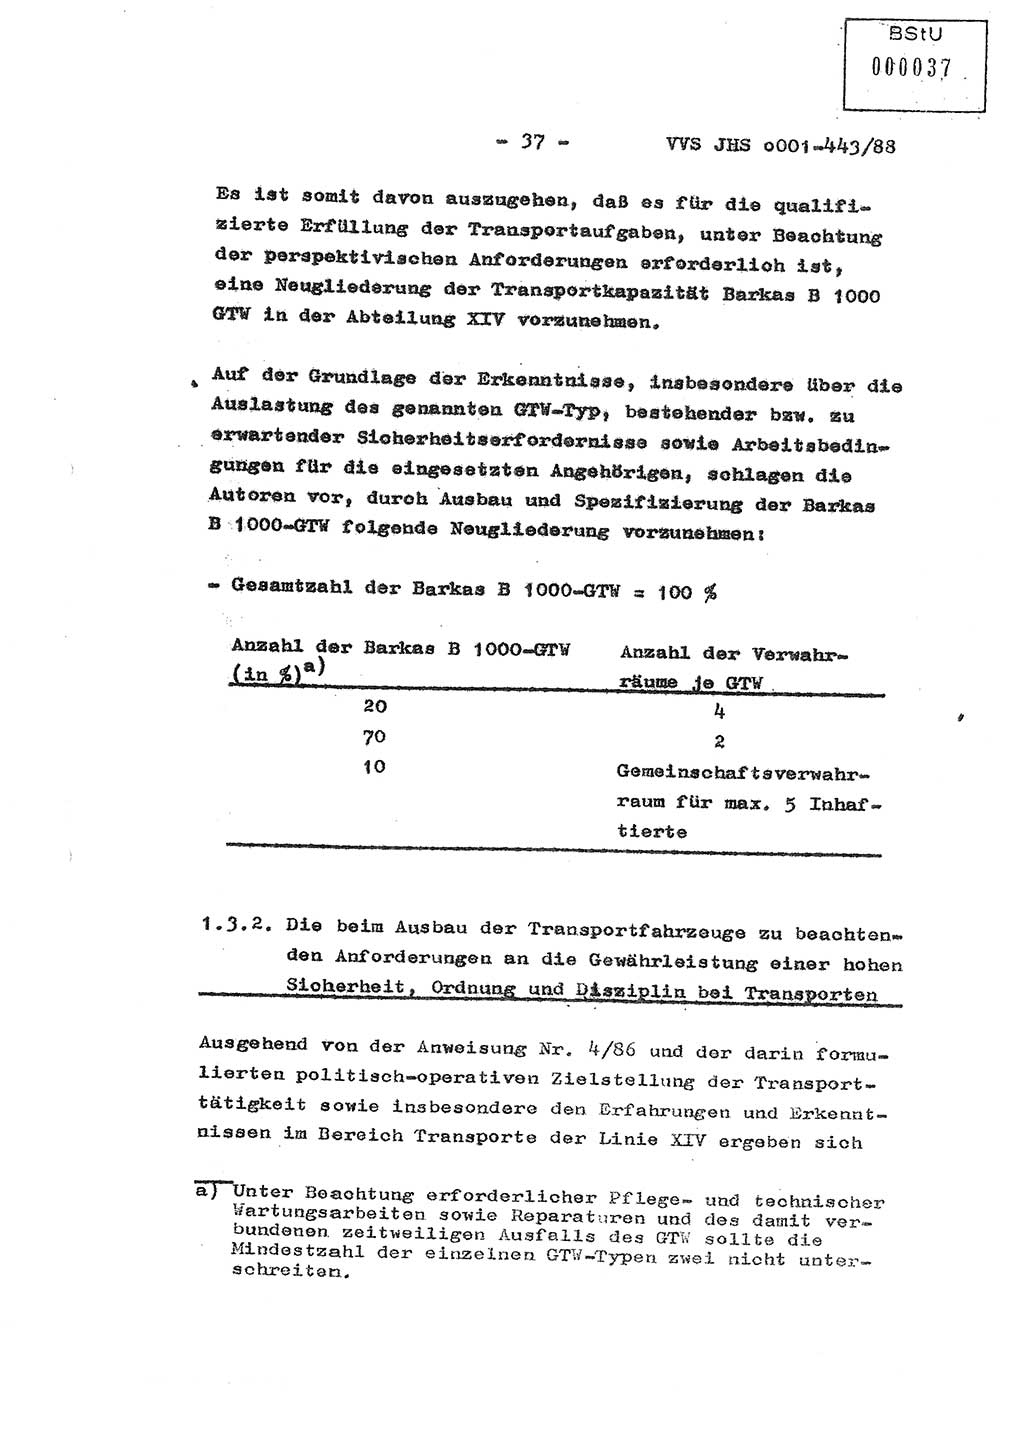 Diplomarbeit Hauptmann Michael Rast (Abt. ⅩⅣ), Major Bernd Rahaus (Abt. ⅩⅣ), Ministerium für Staatssicherheit (MfS) [Deutsche Demokratische Republik (DDR)], Juristische Hochschule (JHS), Vertrauliche Verschlußsache (VVS) o001-443/88, Potsdam 1988, Seite 37 (Dipl.-Arb. MfS DDR JHS VVS o001-443/88 1988, S. 37)